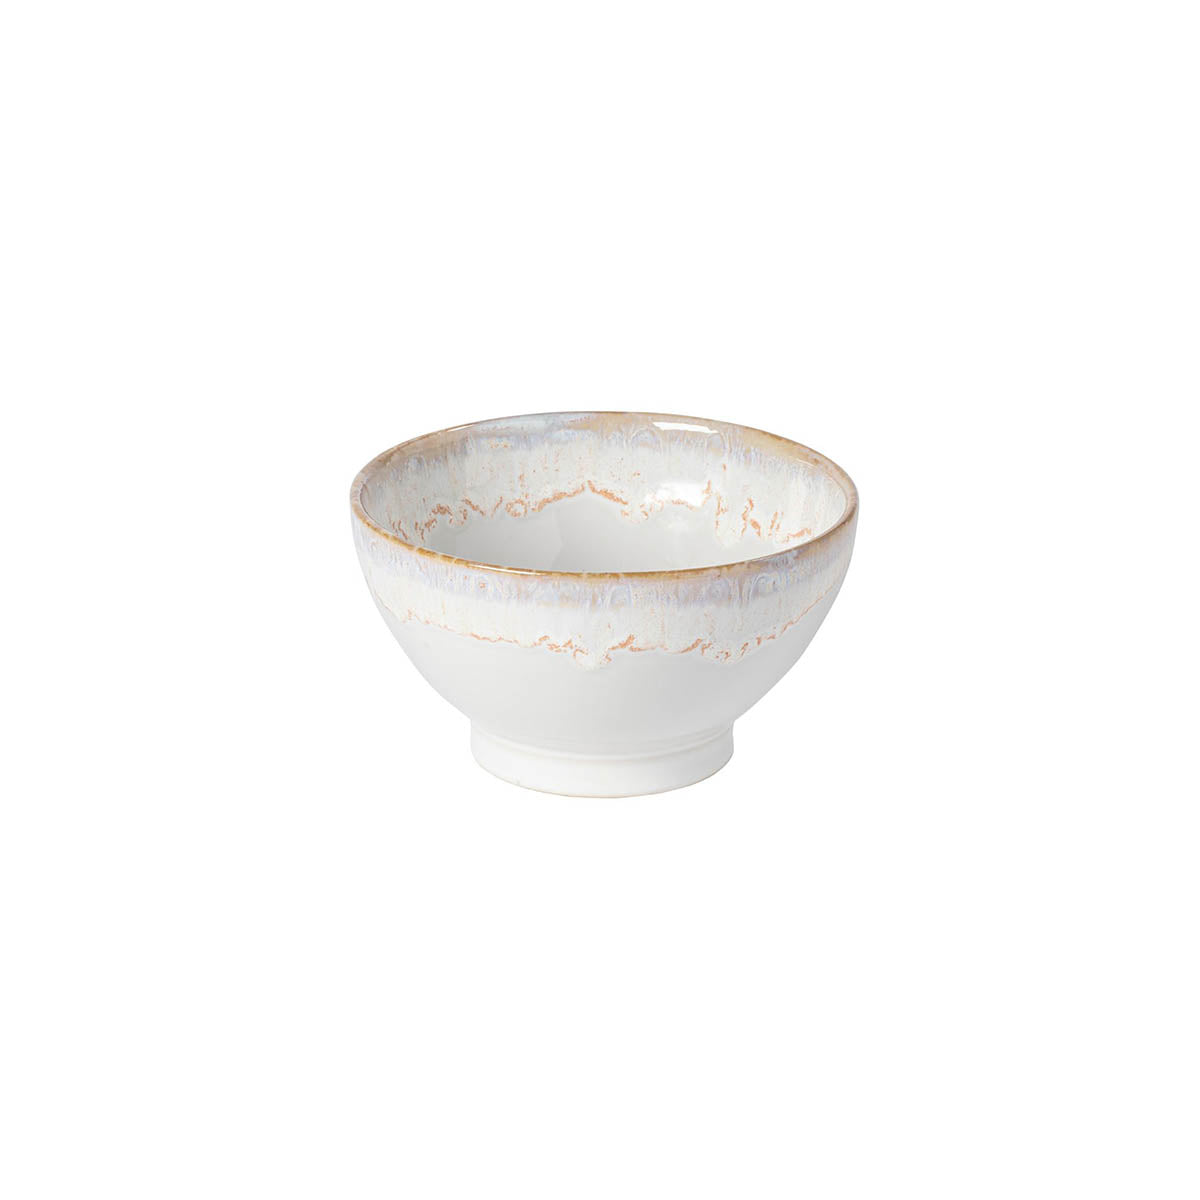 300890 Costa Nova Grespresso White Latte Bowl 145mm / 550ml Tomkin Australia Hospitality Supplies